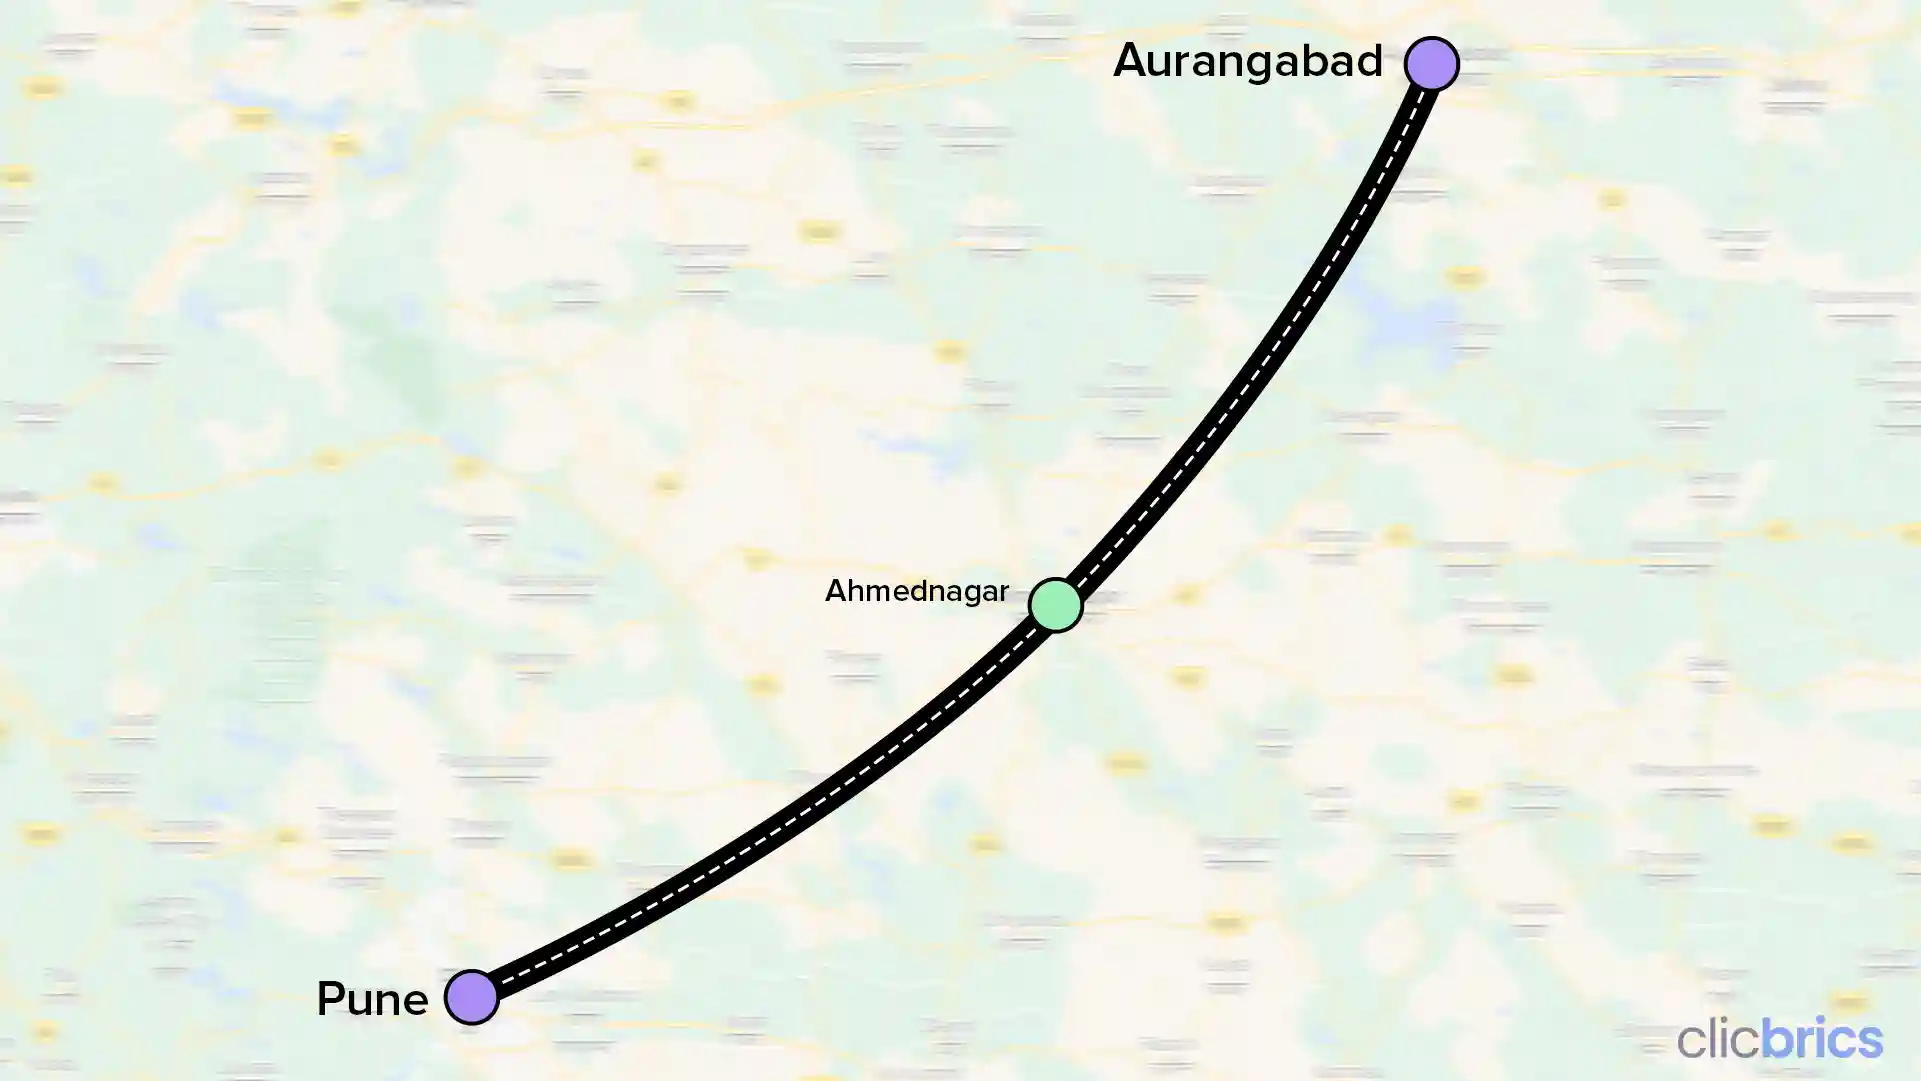 Pune Aurangabad expressway route map